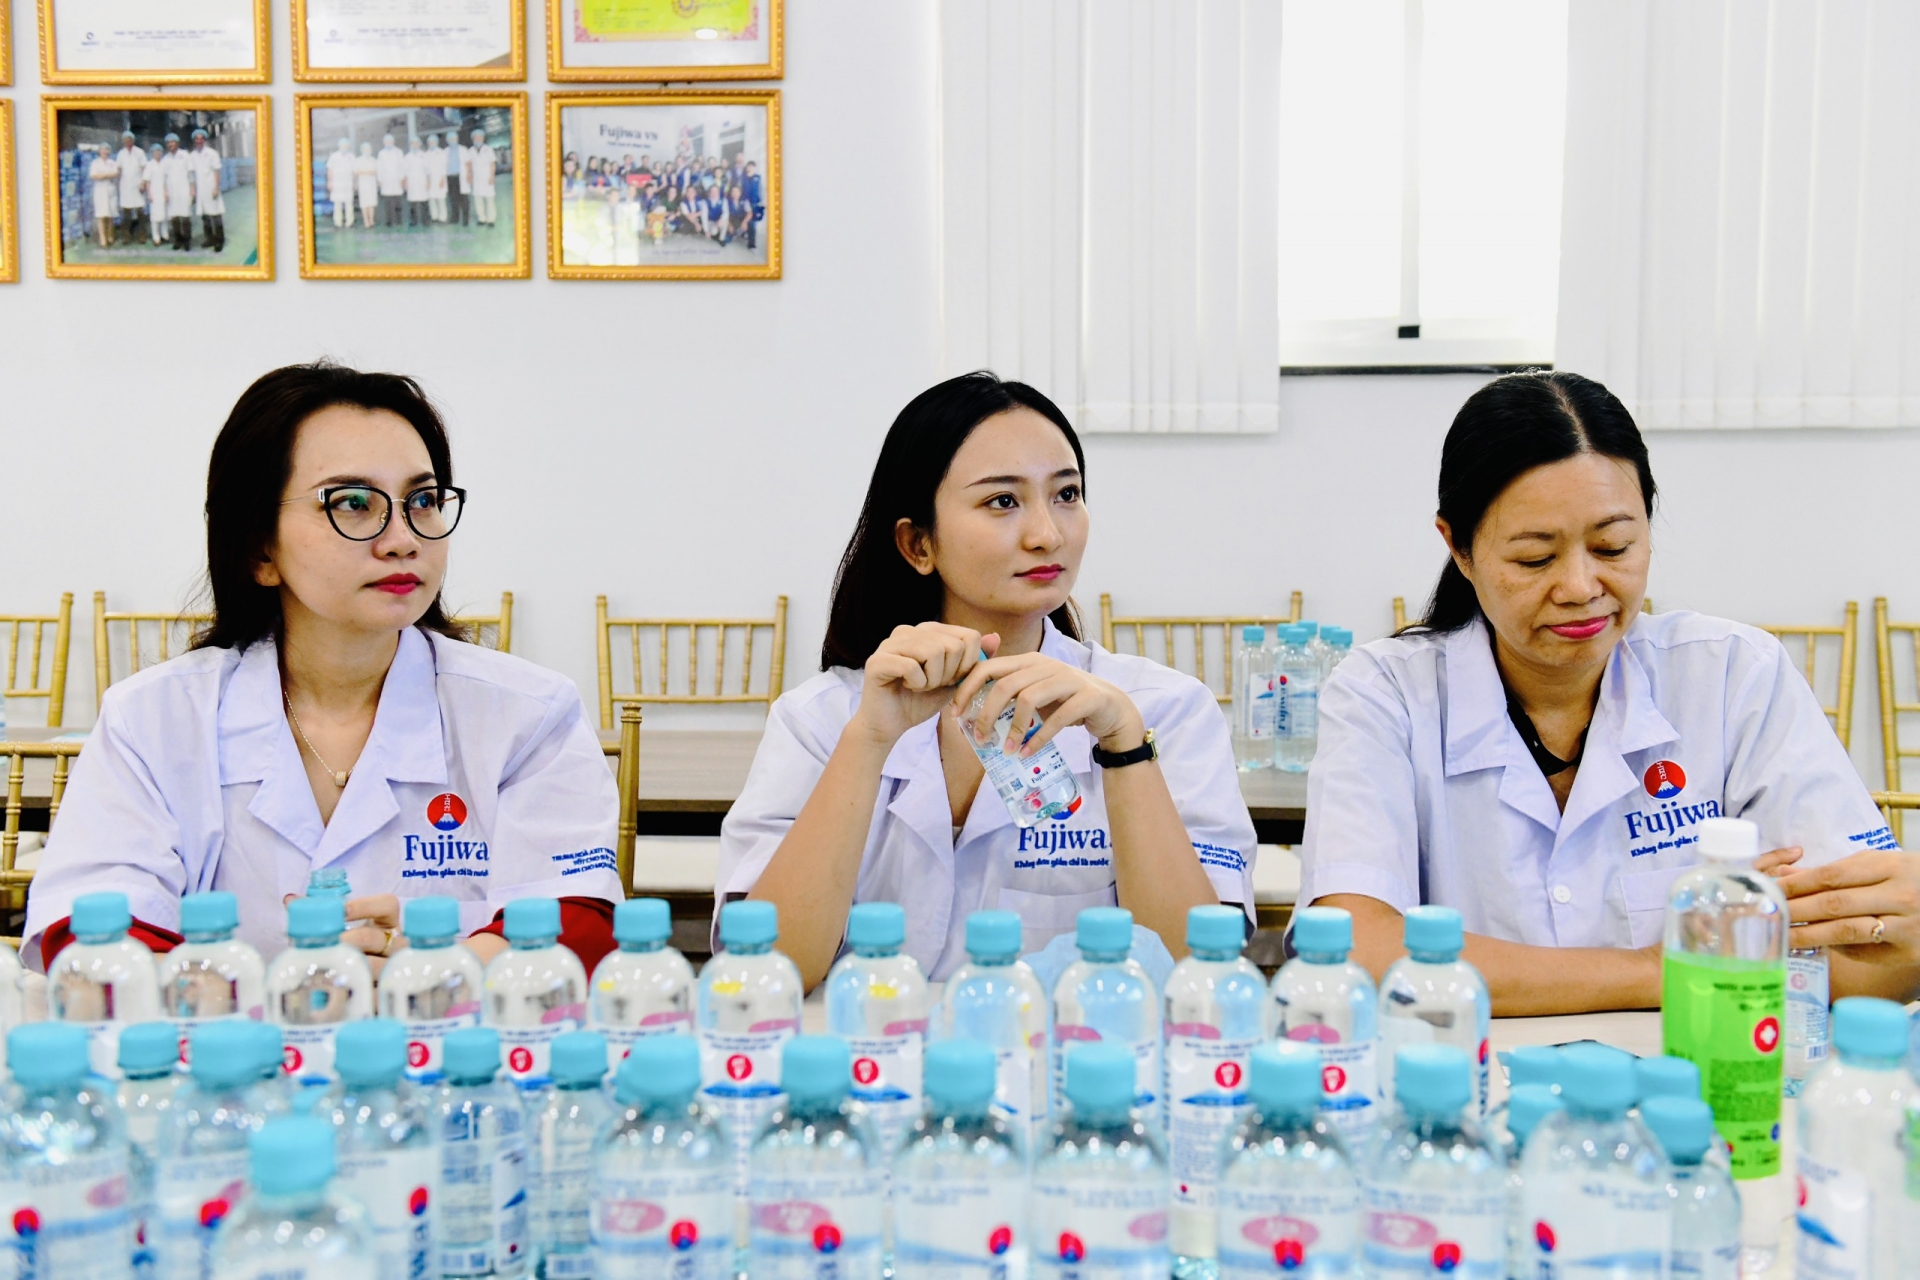 Công ty TNHH Fujiwa Việt Nam: “Vì sức khỏe cộng đồng”